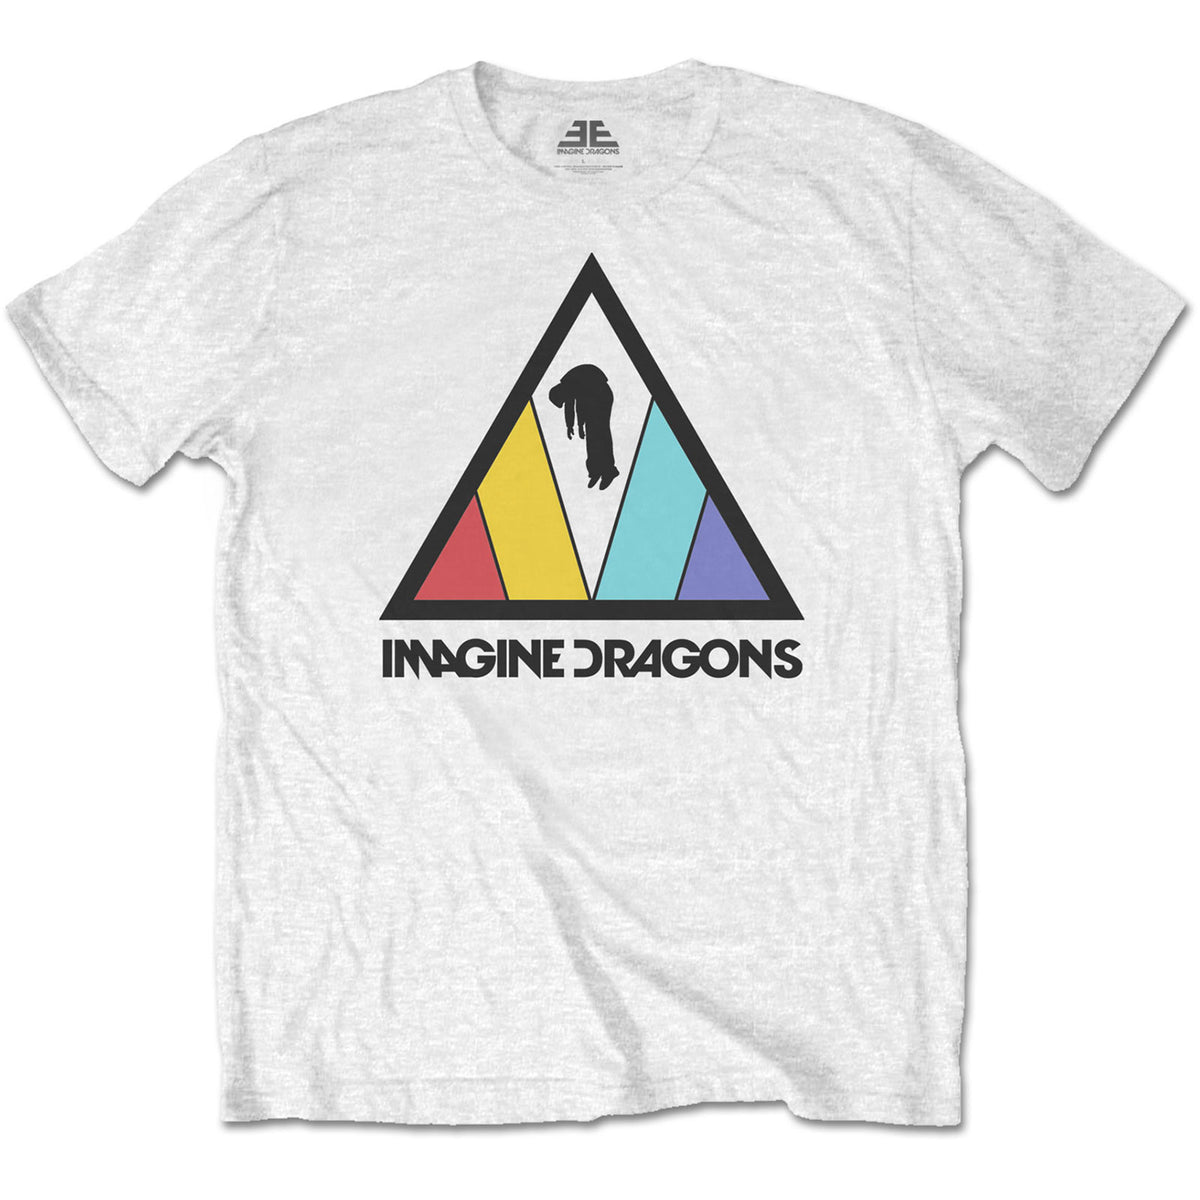 Imagine Dragons T-Shirt – Dreiecks-Logo – Unisex, offizielles Lizenzdesign